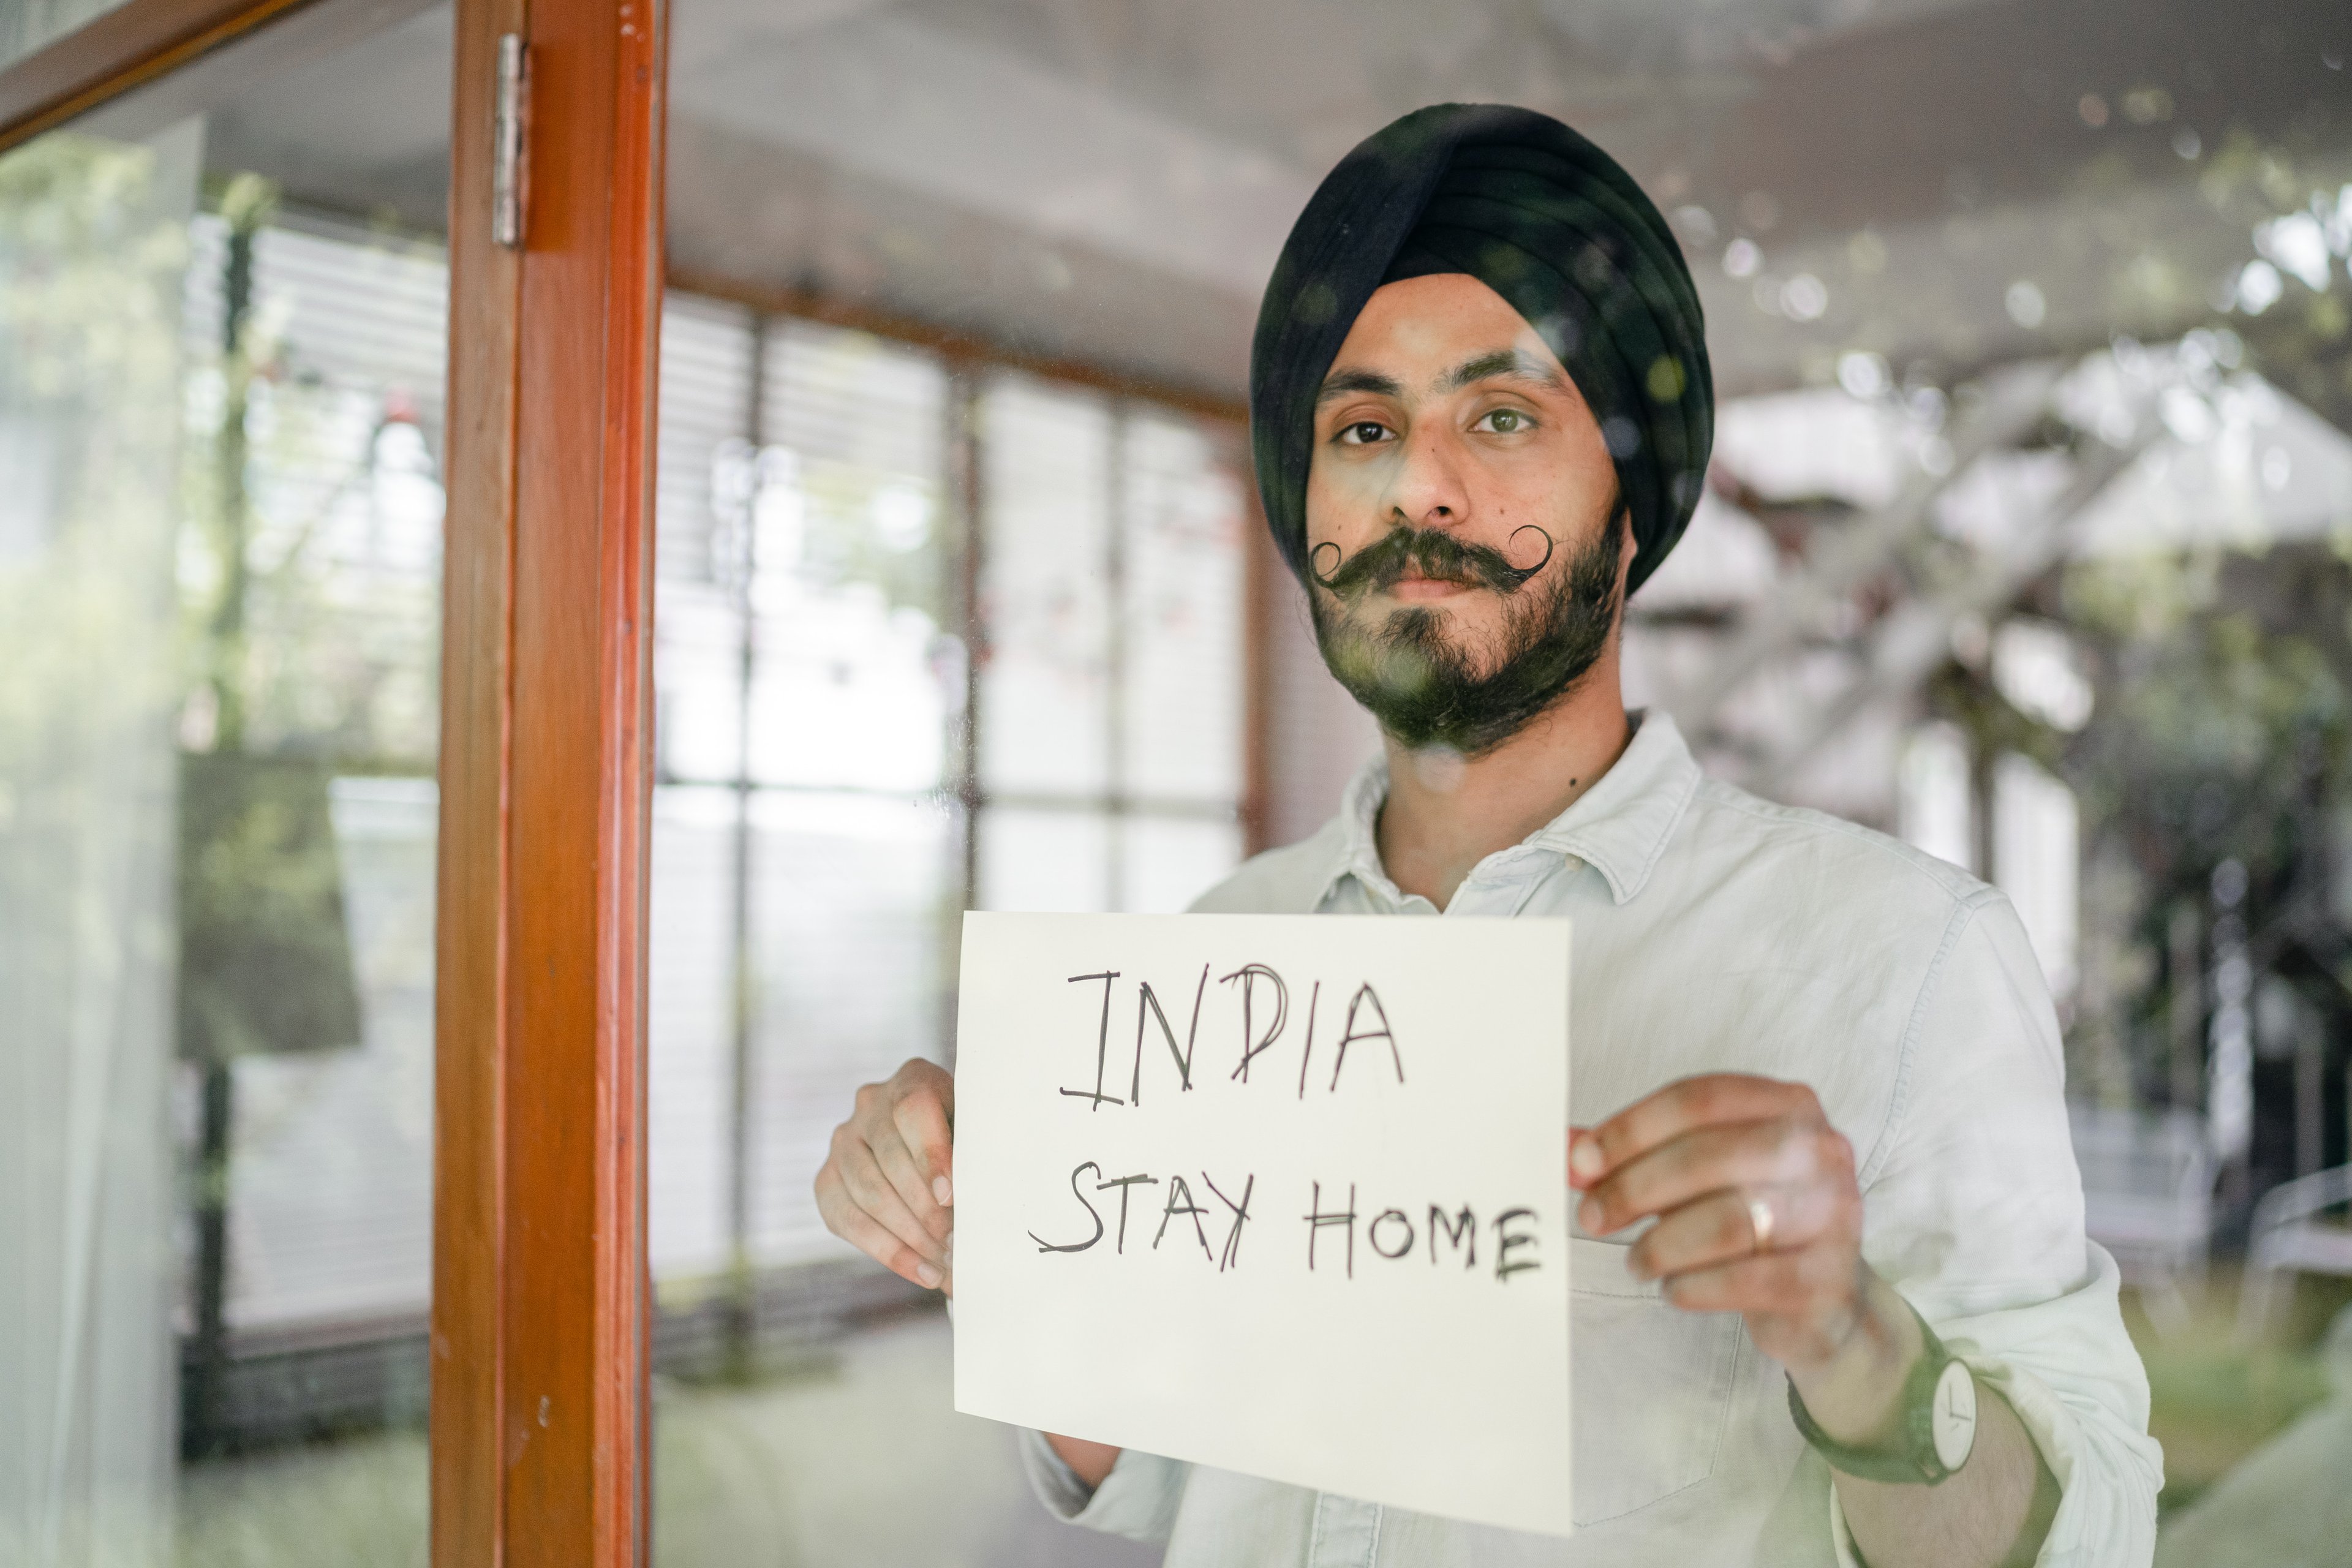 Foto de Ketut Subiyanto, pedindo para que indianos fiquem em casa.